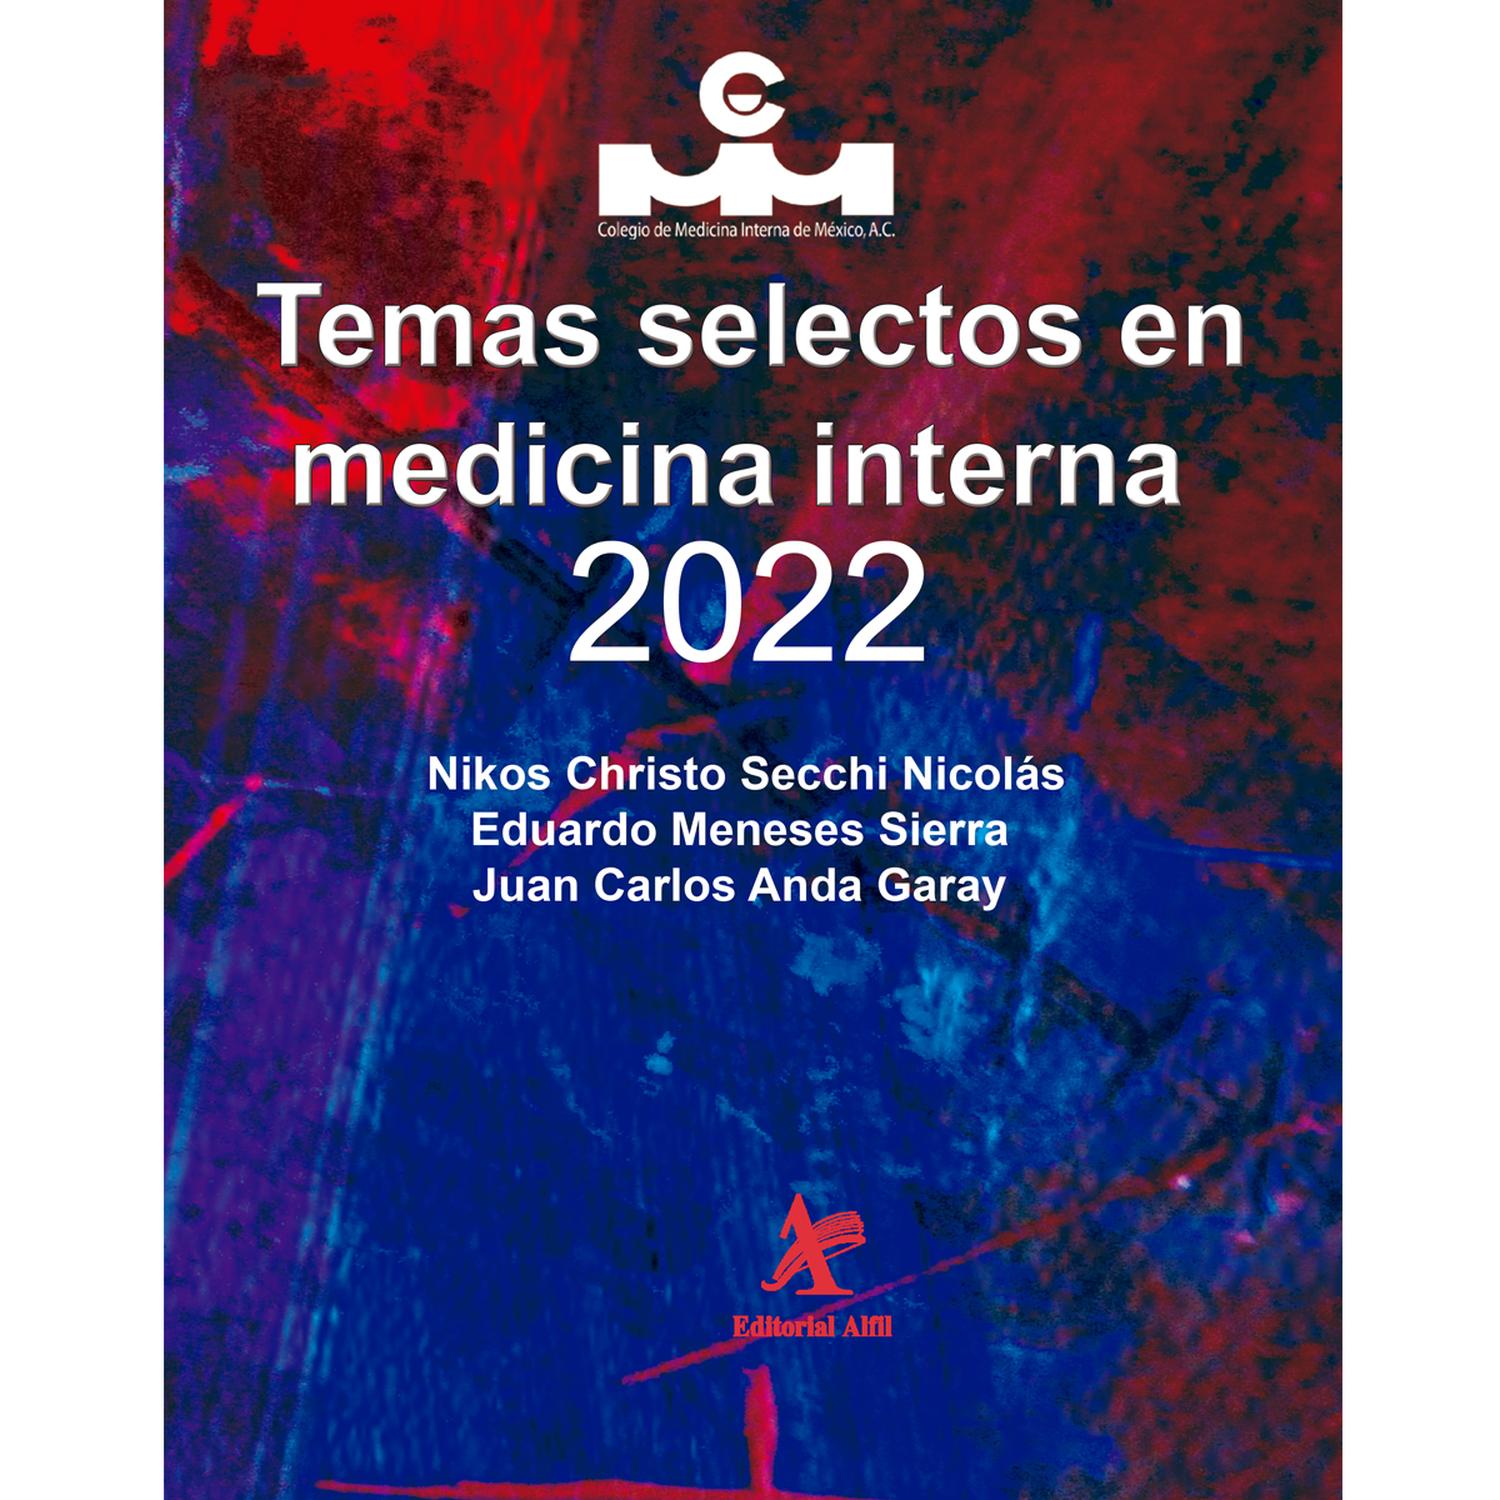 Temas Selectos En Medicina Interna 2022 Cadabra And Books 9137